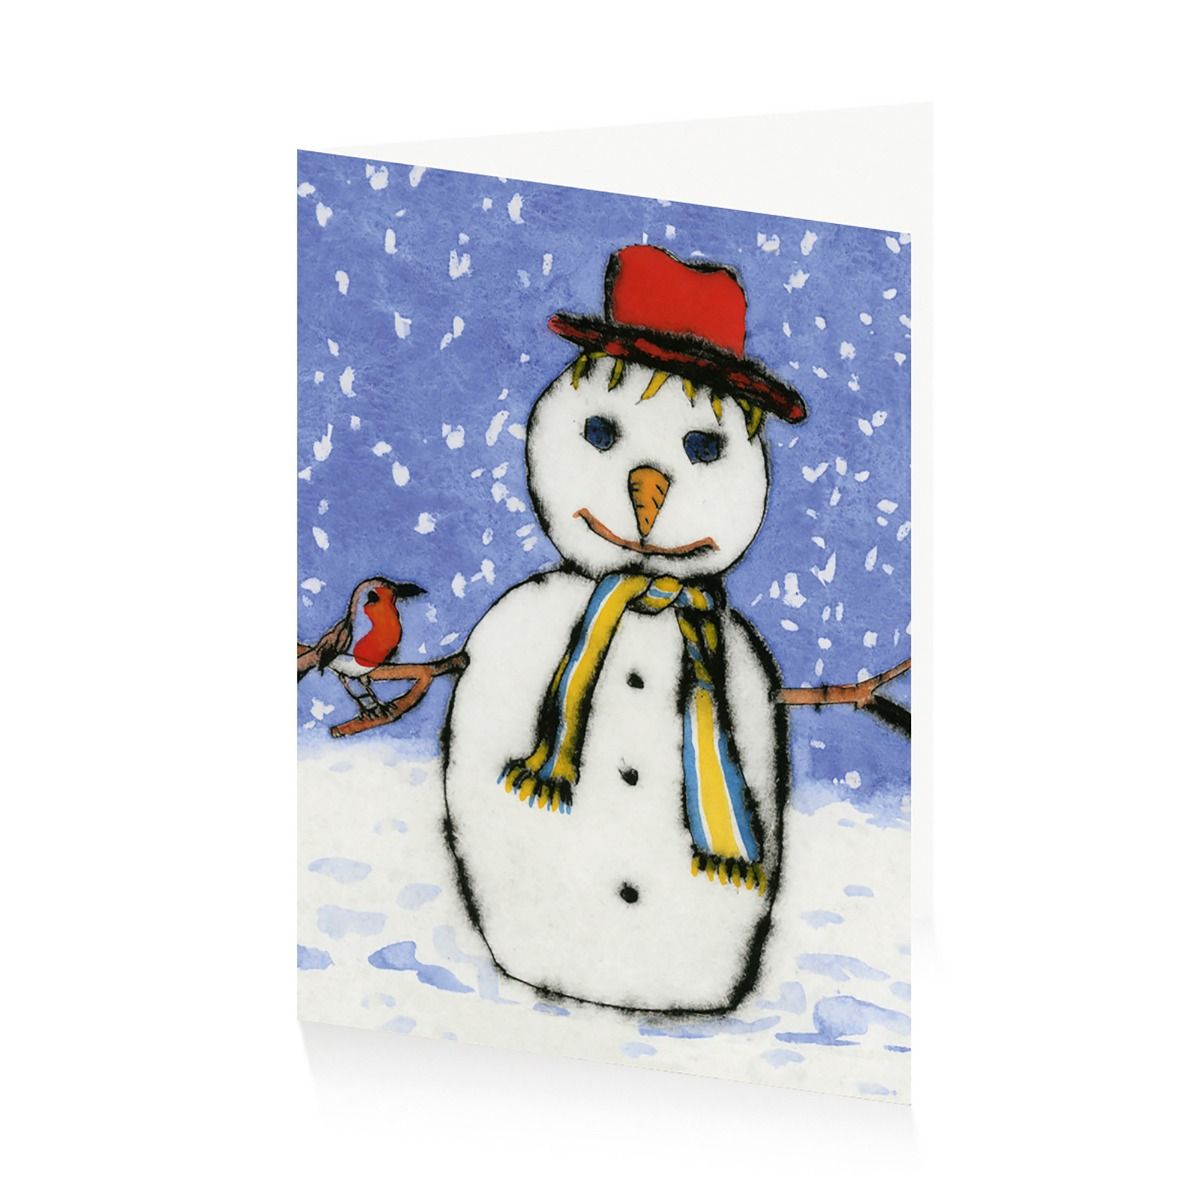 Royal Academy | Richard Spare - 'Snowman' - Merry Christmas | Set of 10 Art Christmas Cards (17 x 12 cm)